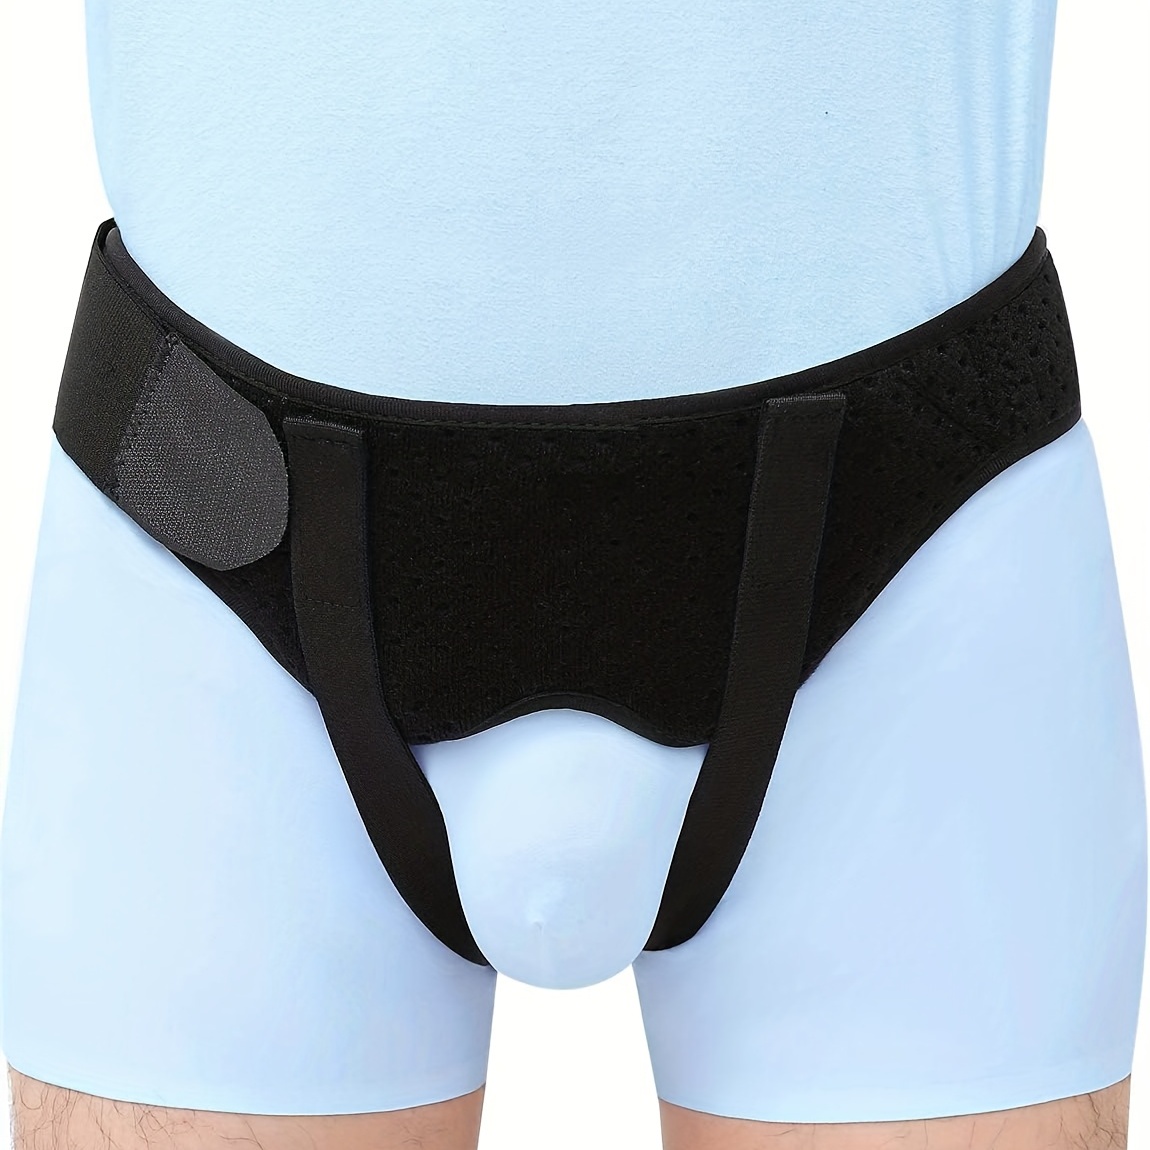 Cinturón de hernia umbilical para hombres y mujeres – Soporte de hernia  para hombres con 2 almohadillas de compresión (inguinal, femoral,  incisional)